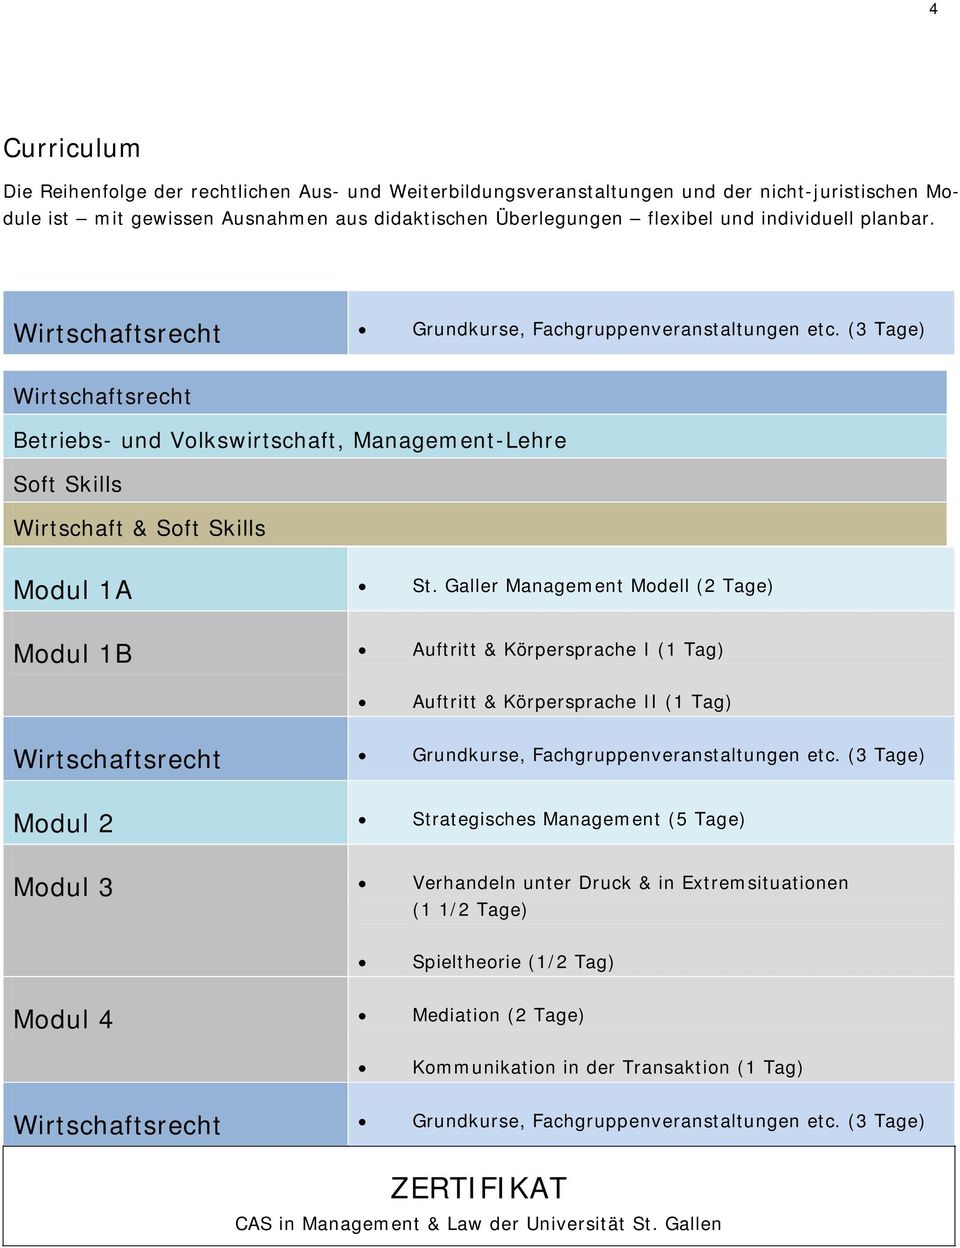 Galler Management Modell (2 Tage) Modul 1B Auftritt & Körpersprache I (1 Tag) Auftritt & Körpersprache II (1 Tag) Wirtschaftsrecht Grundkurse, Fachgruppenveranstaltungen etc.